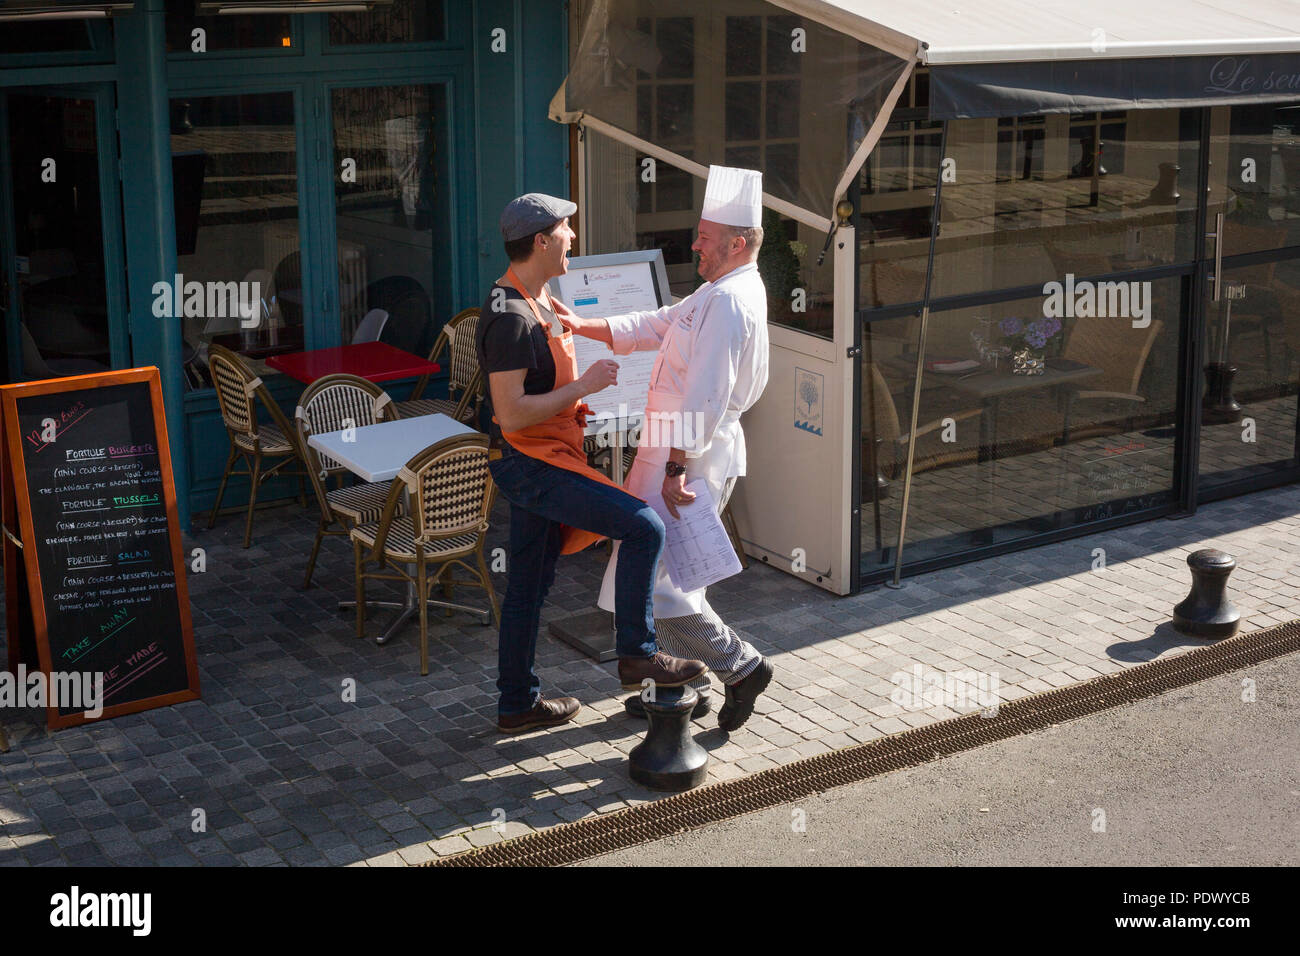 Un chef bénéficie d'une blague avec un ami dans une scène de rue à Honfleur, Normandie, France Banque D'Images